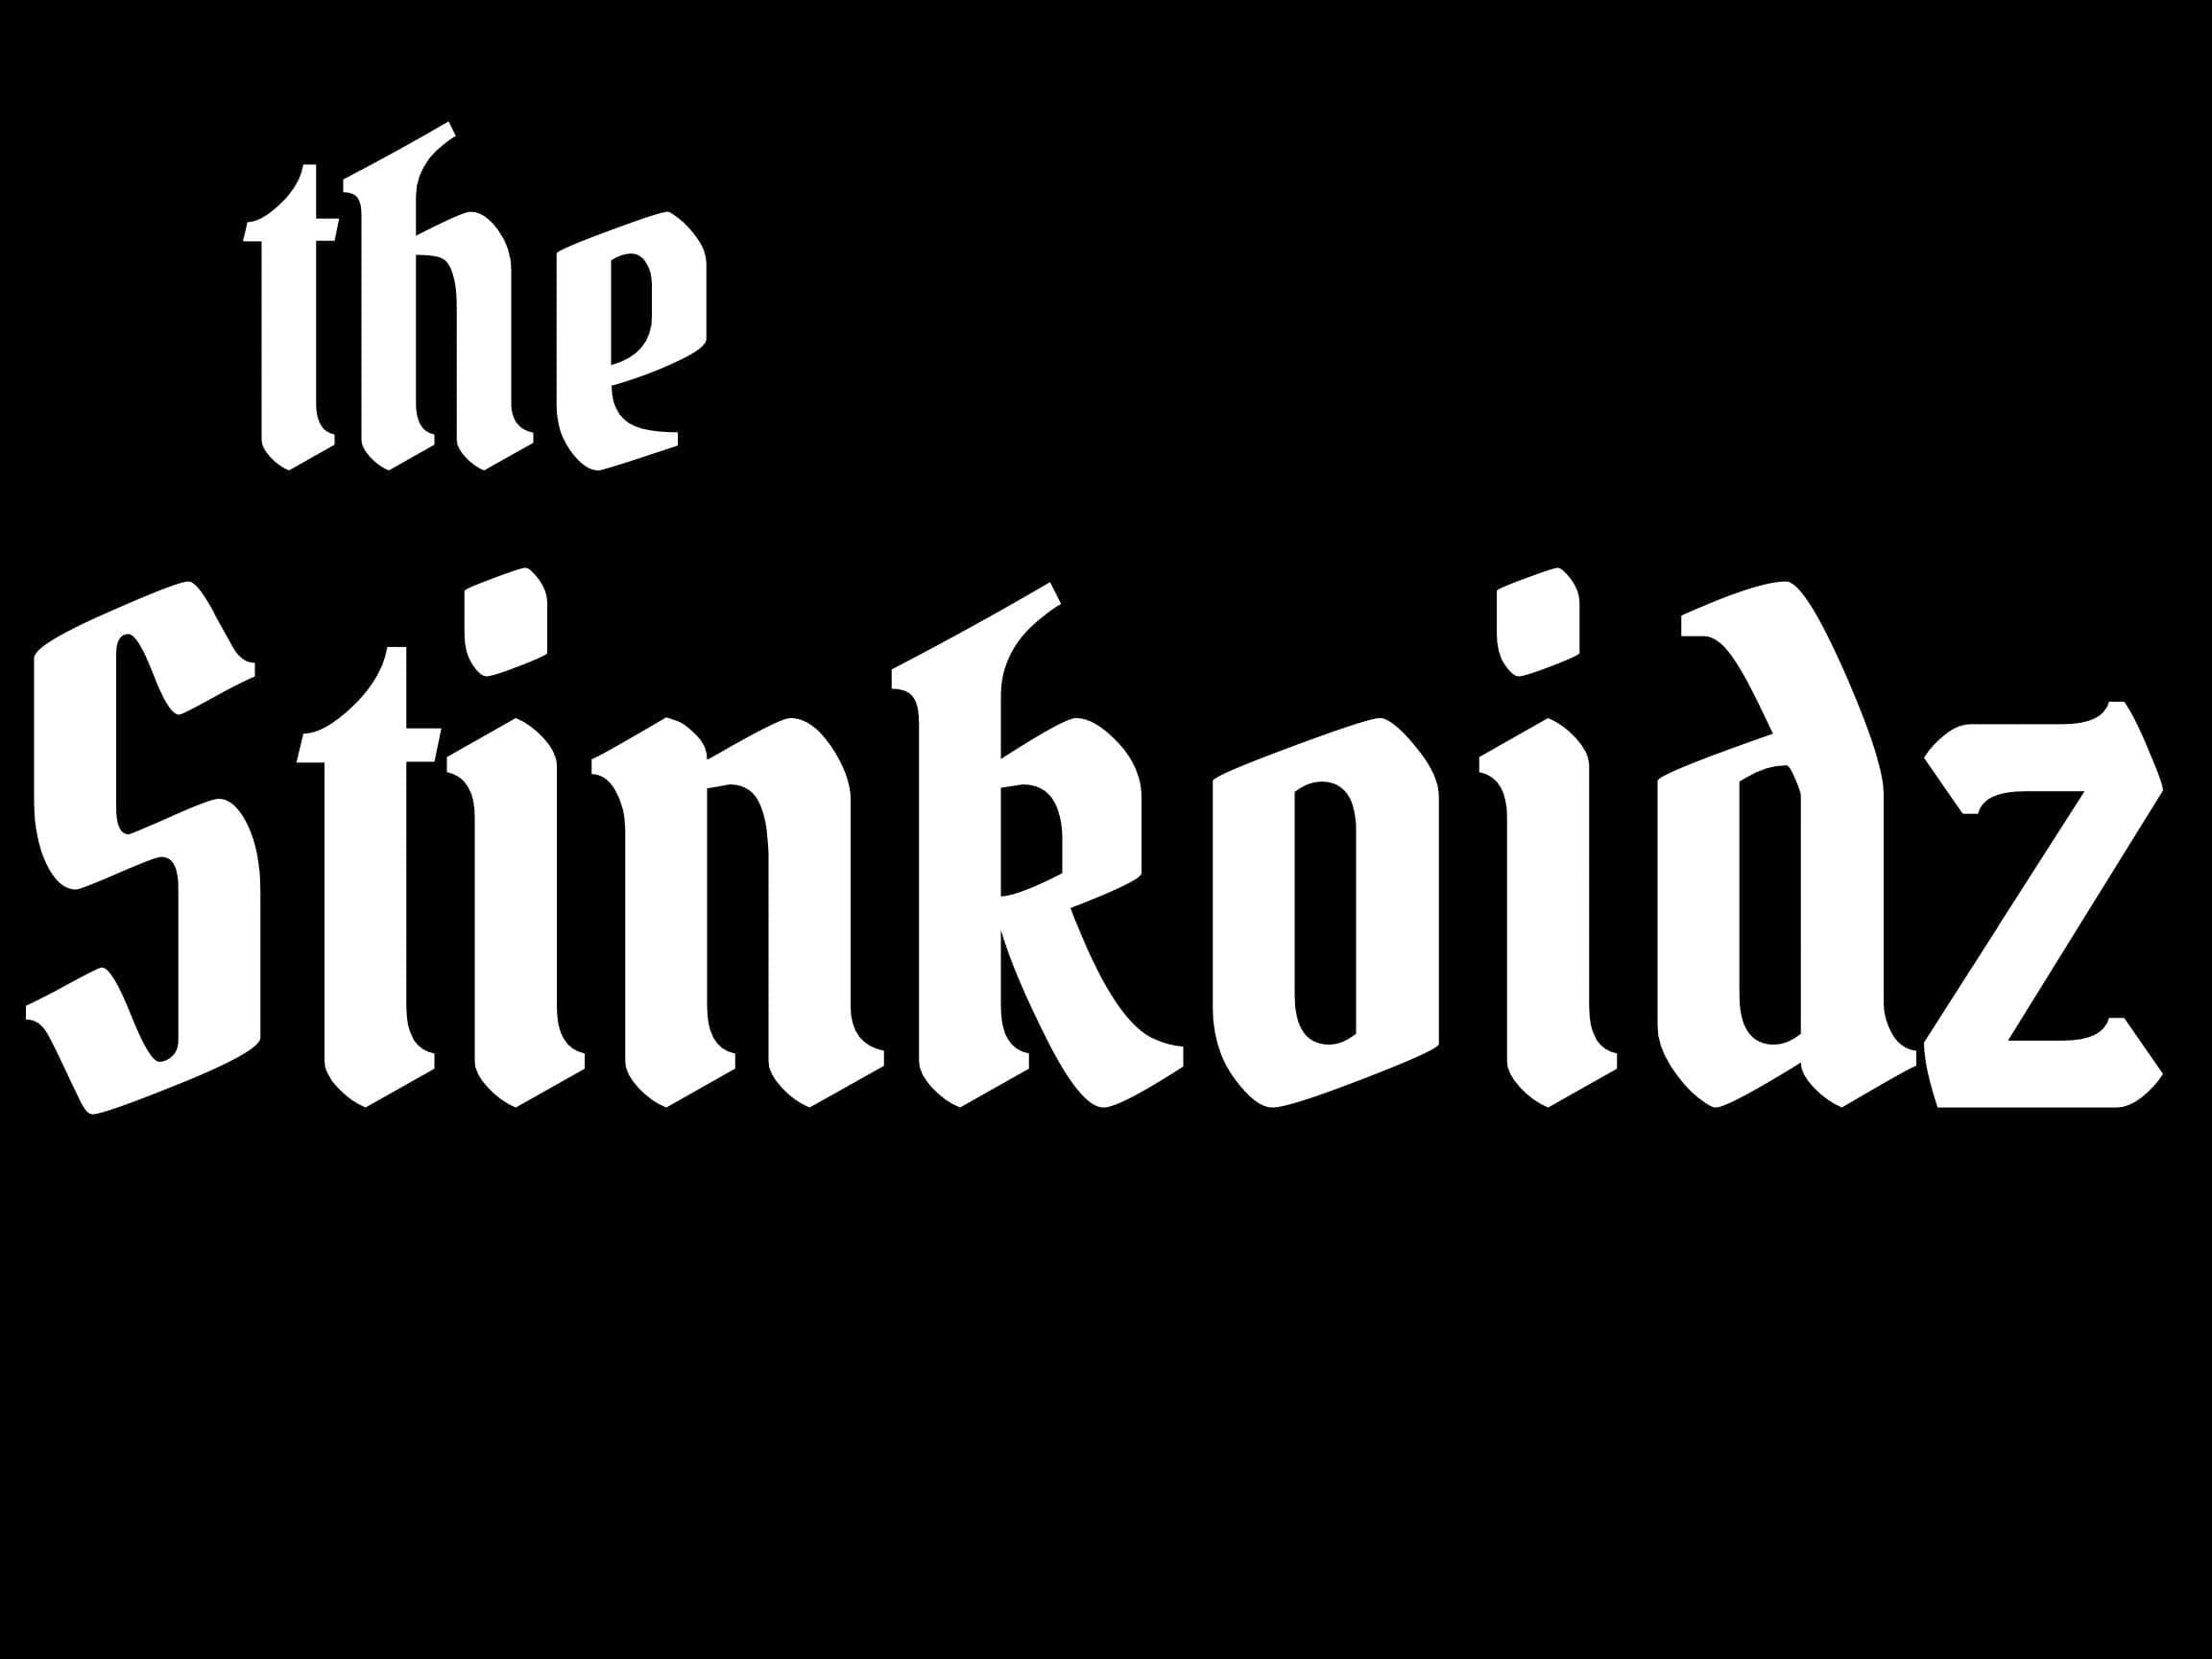 the Stinkoidz